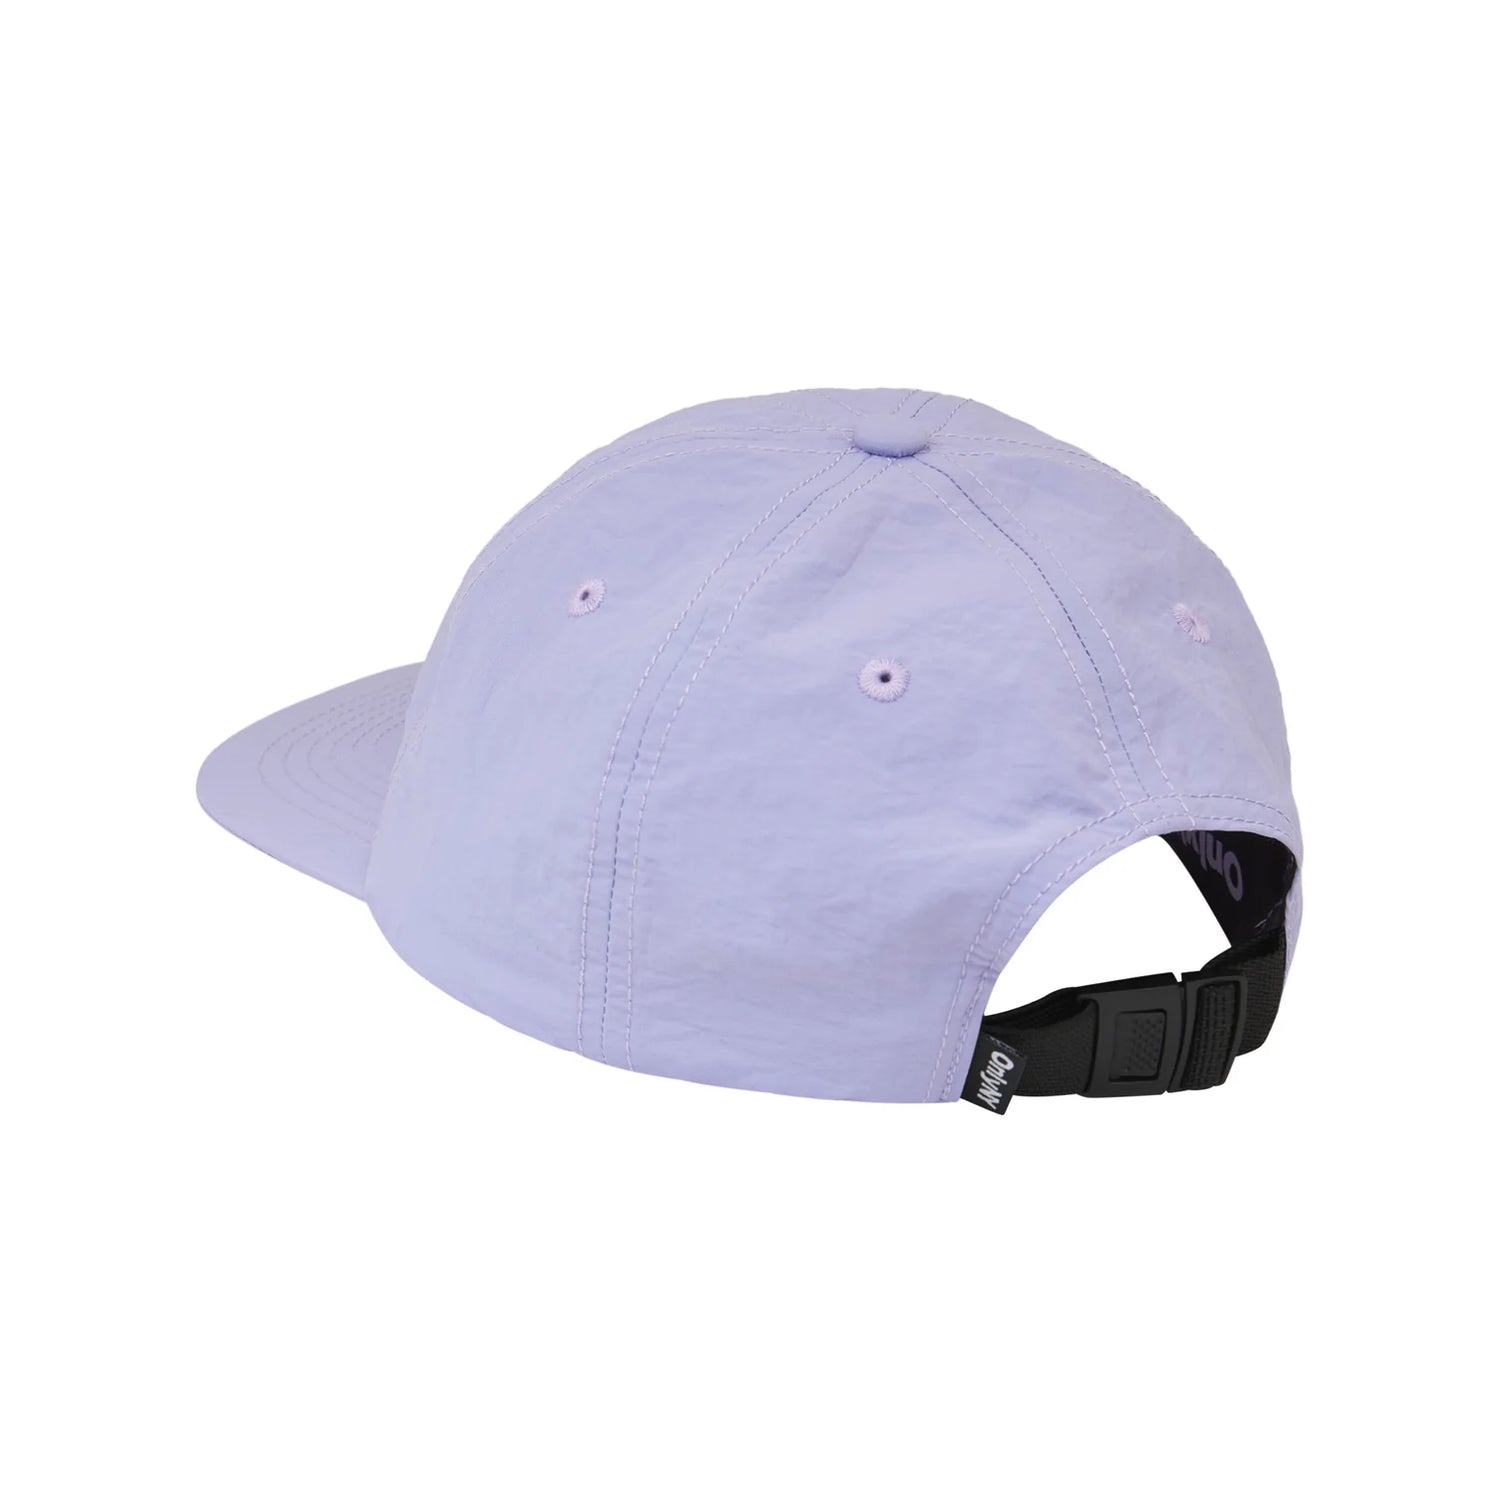 Only NY NY Speed Logo Hat - Lavender